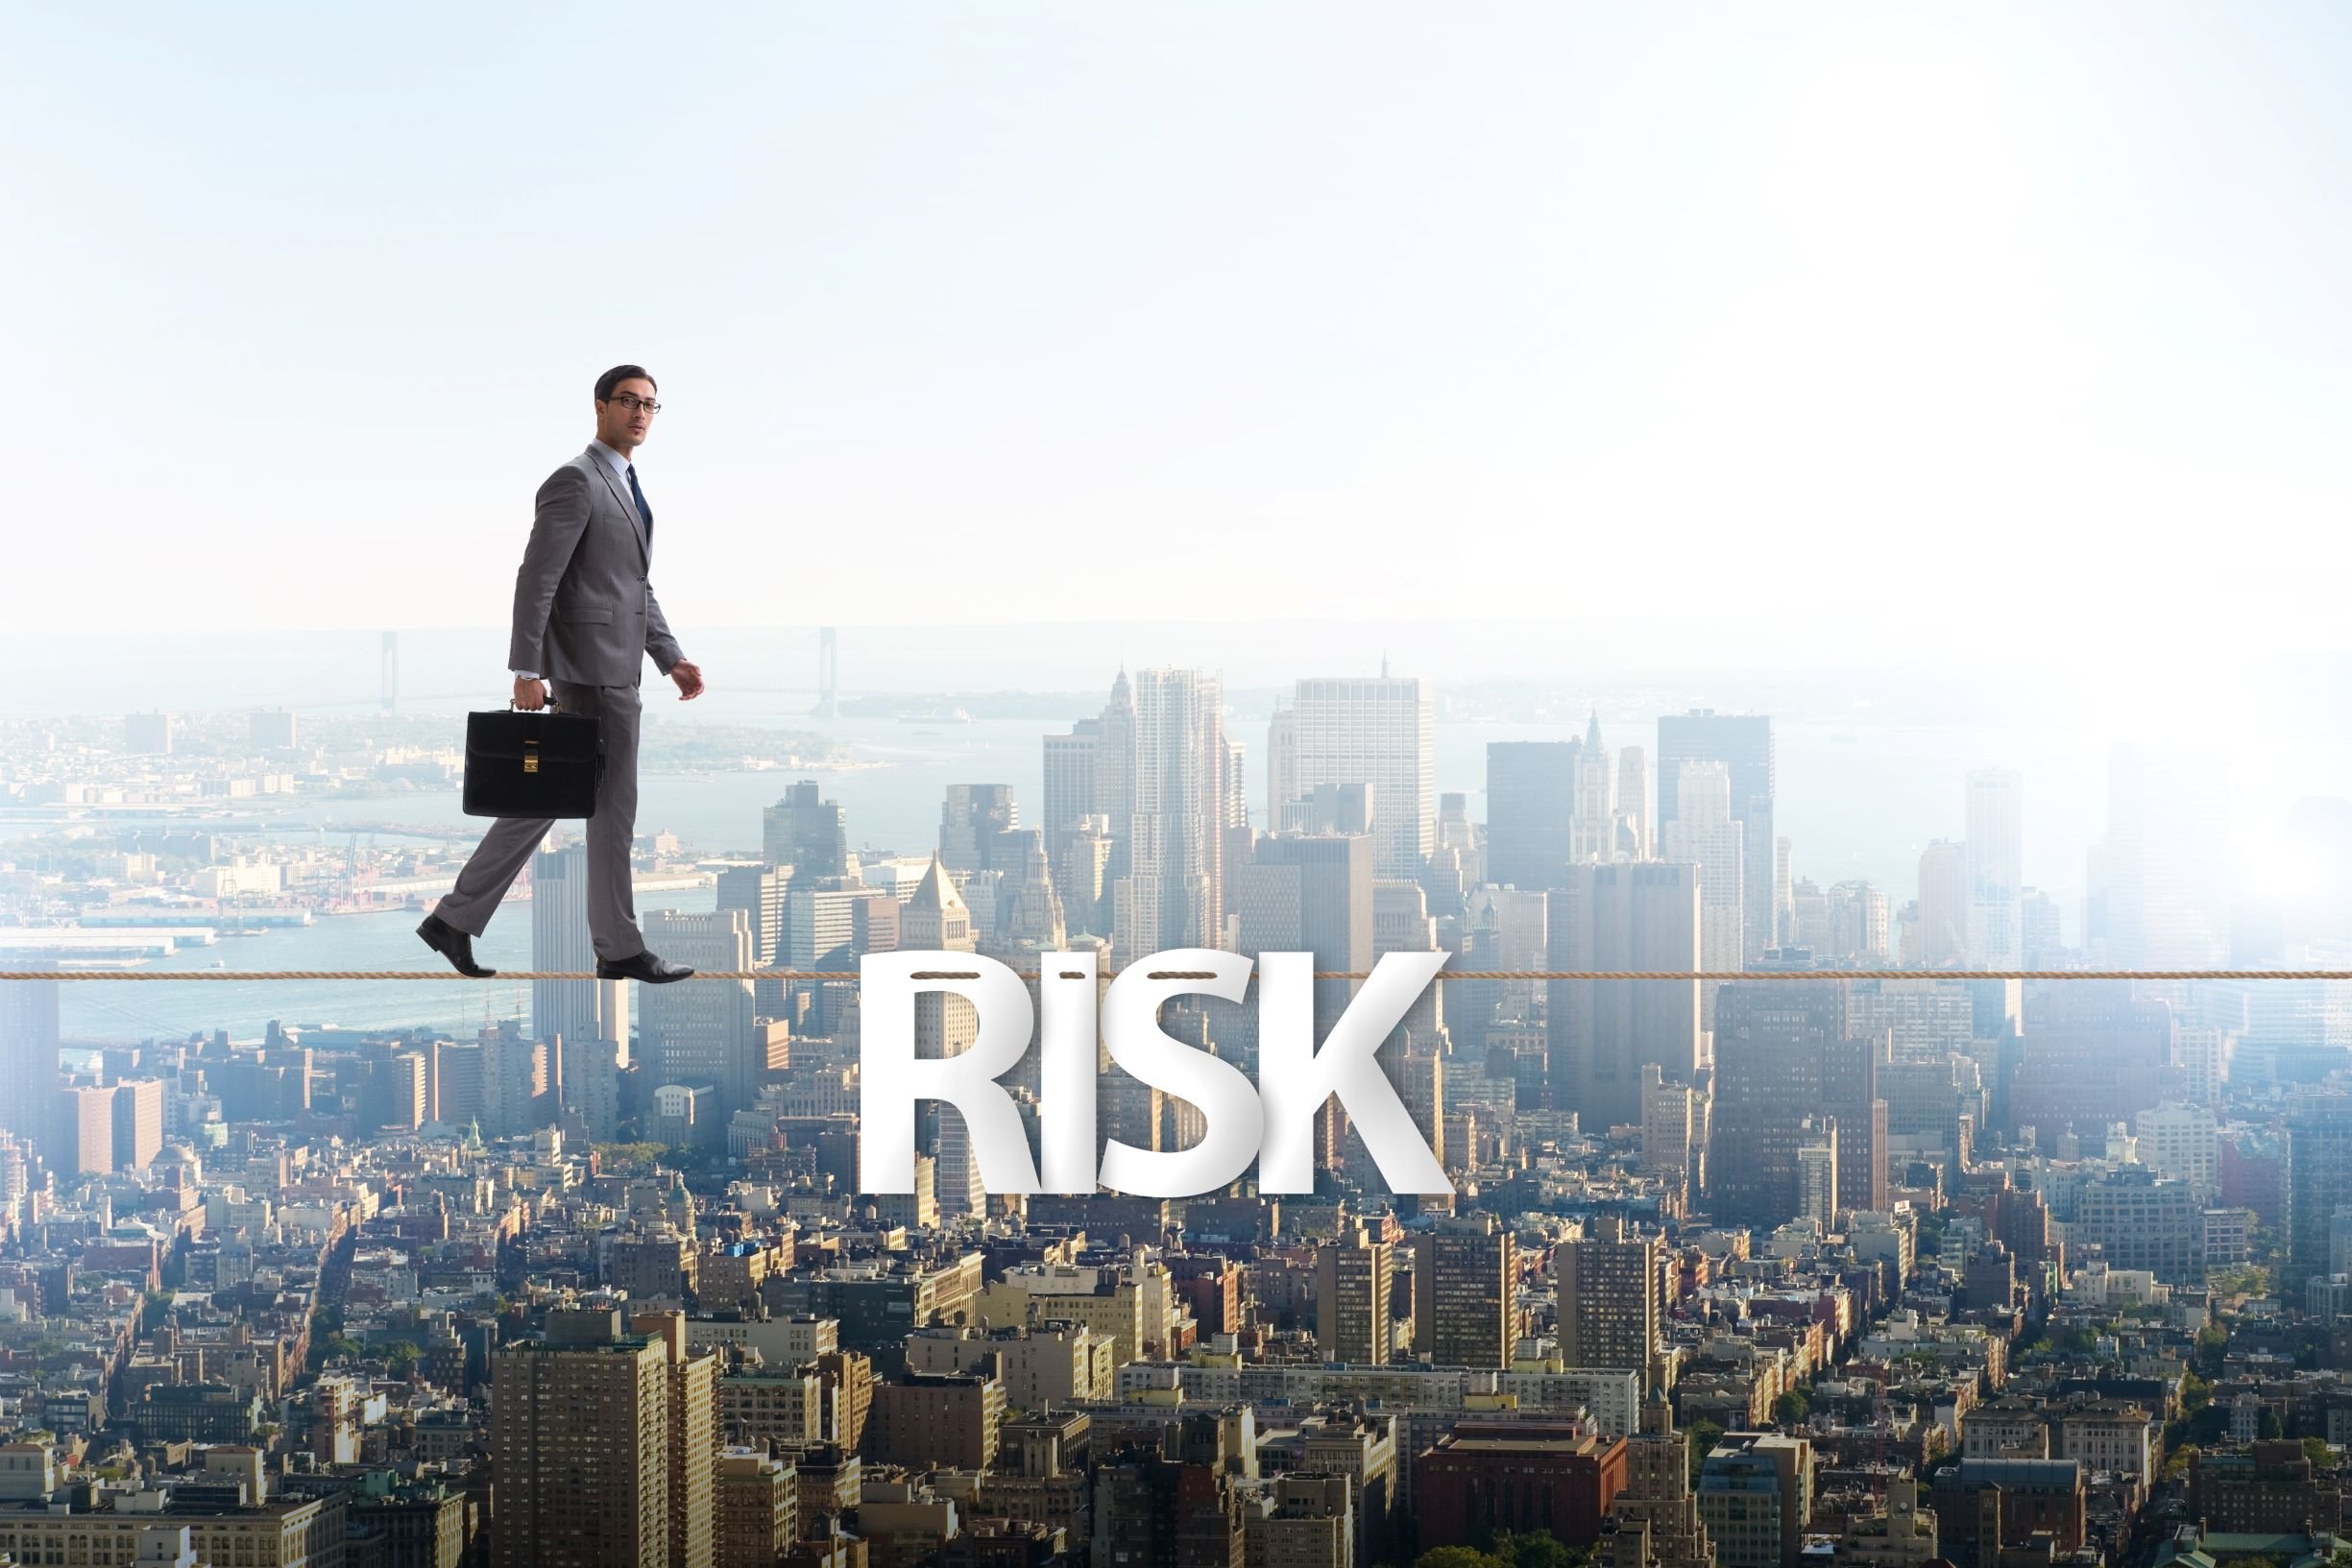 Risk-1